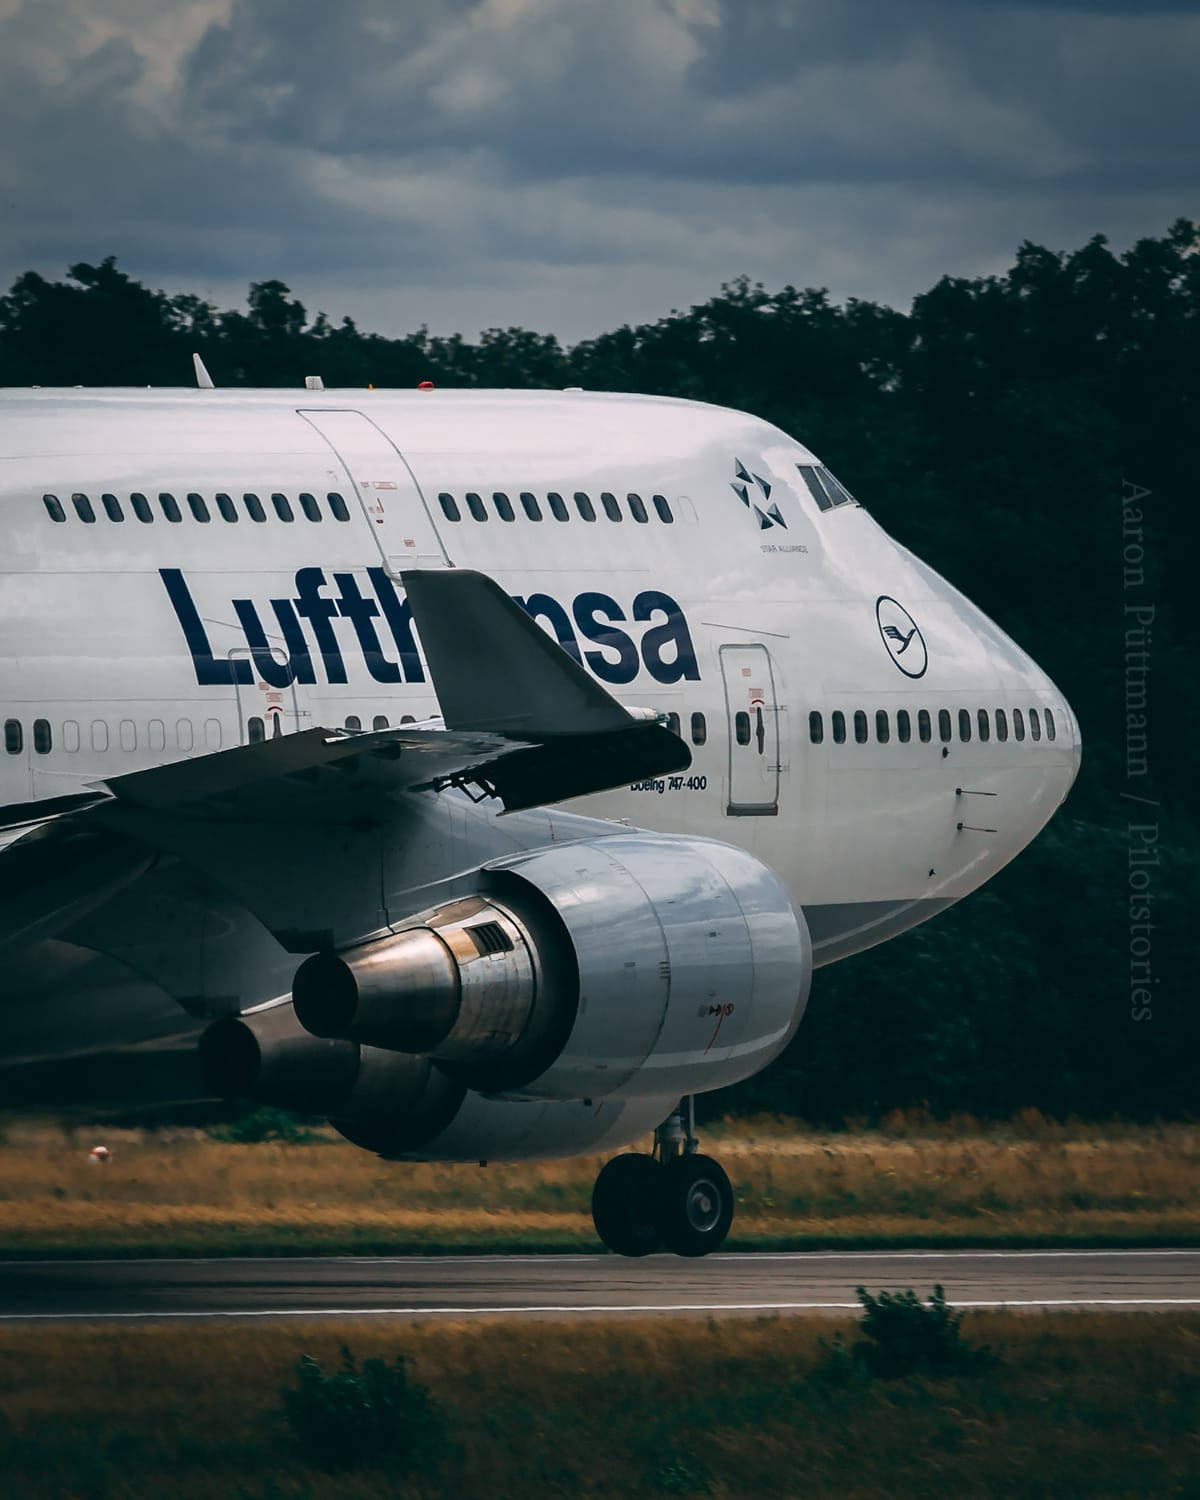 Deutsche Lufthansa Plane Aesthetic Picture